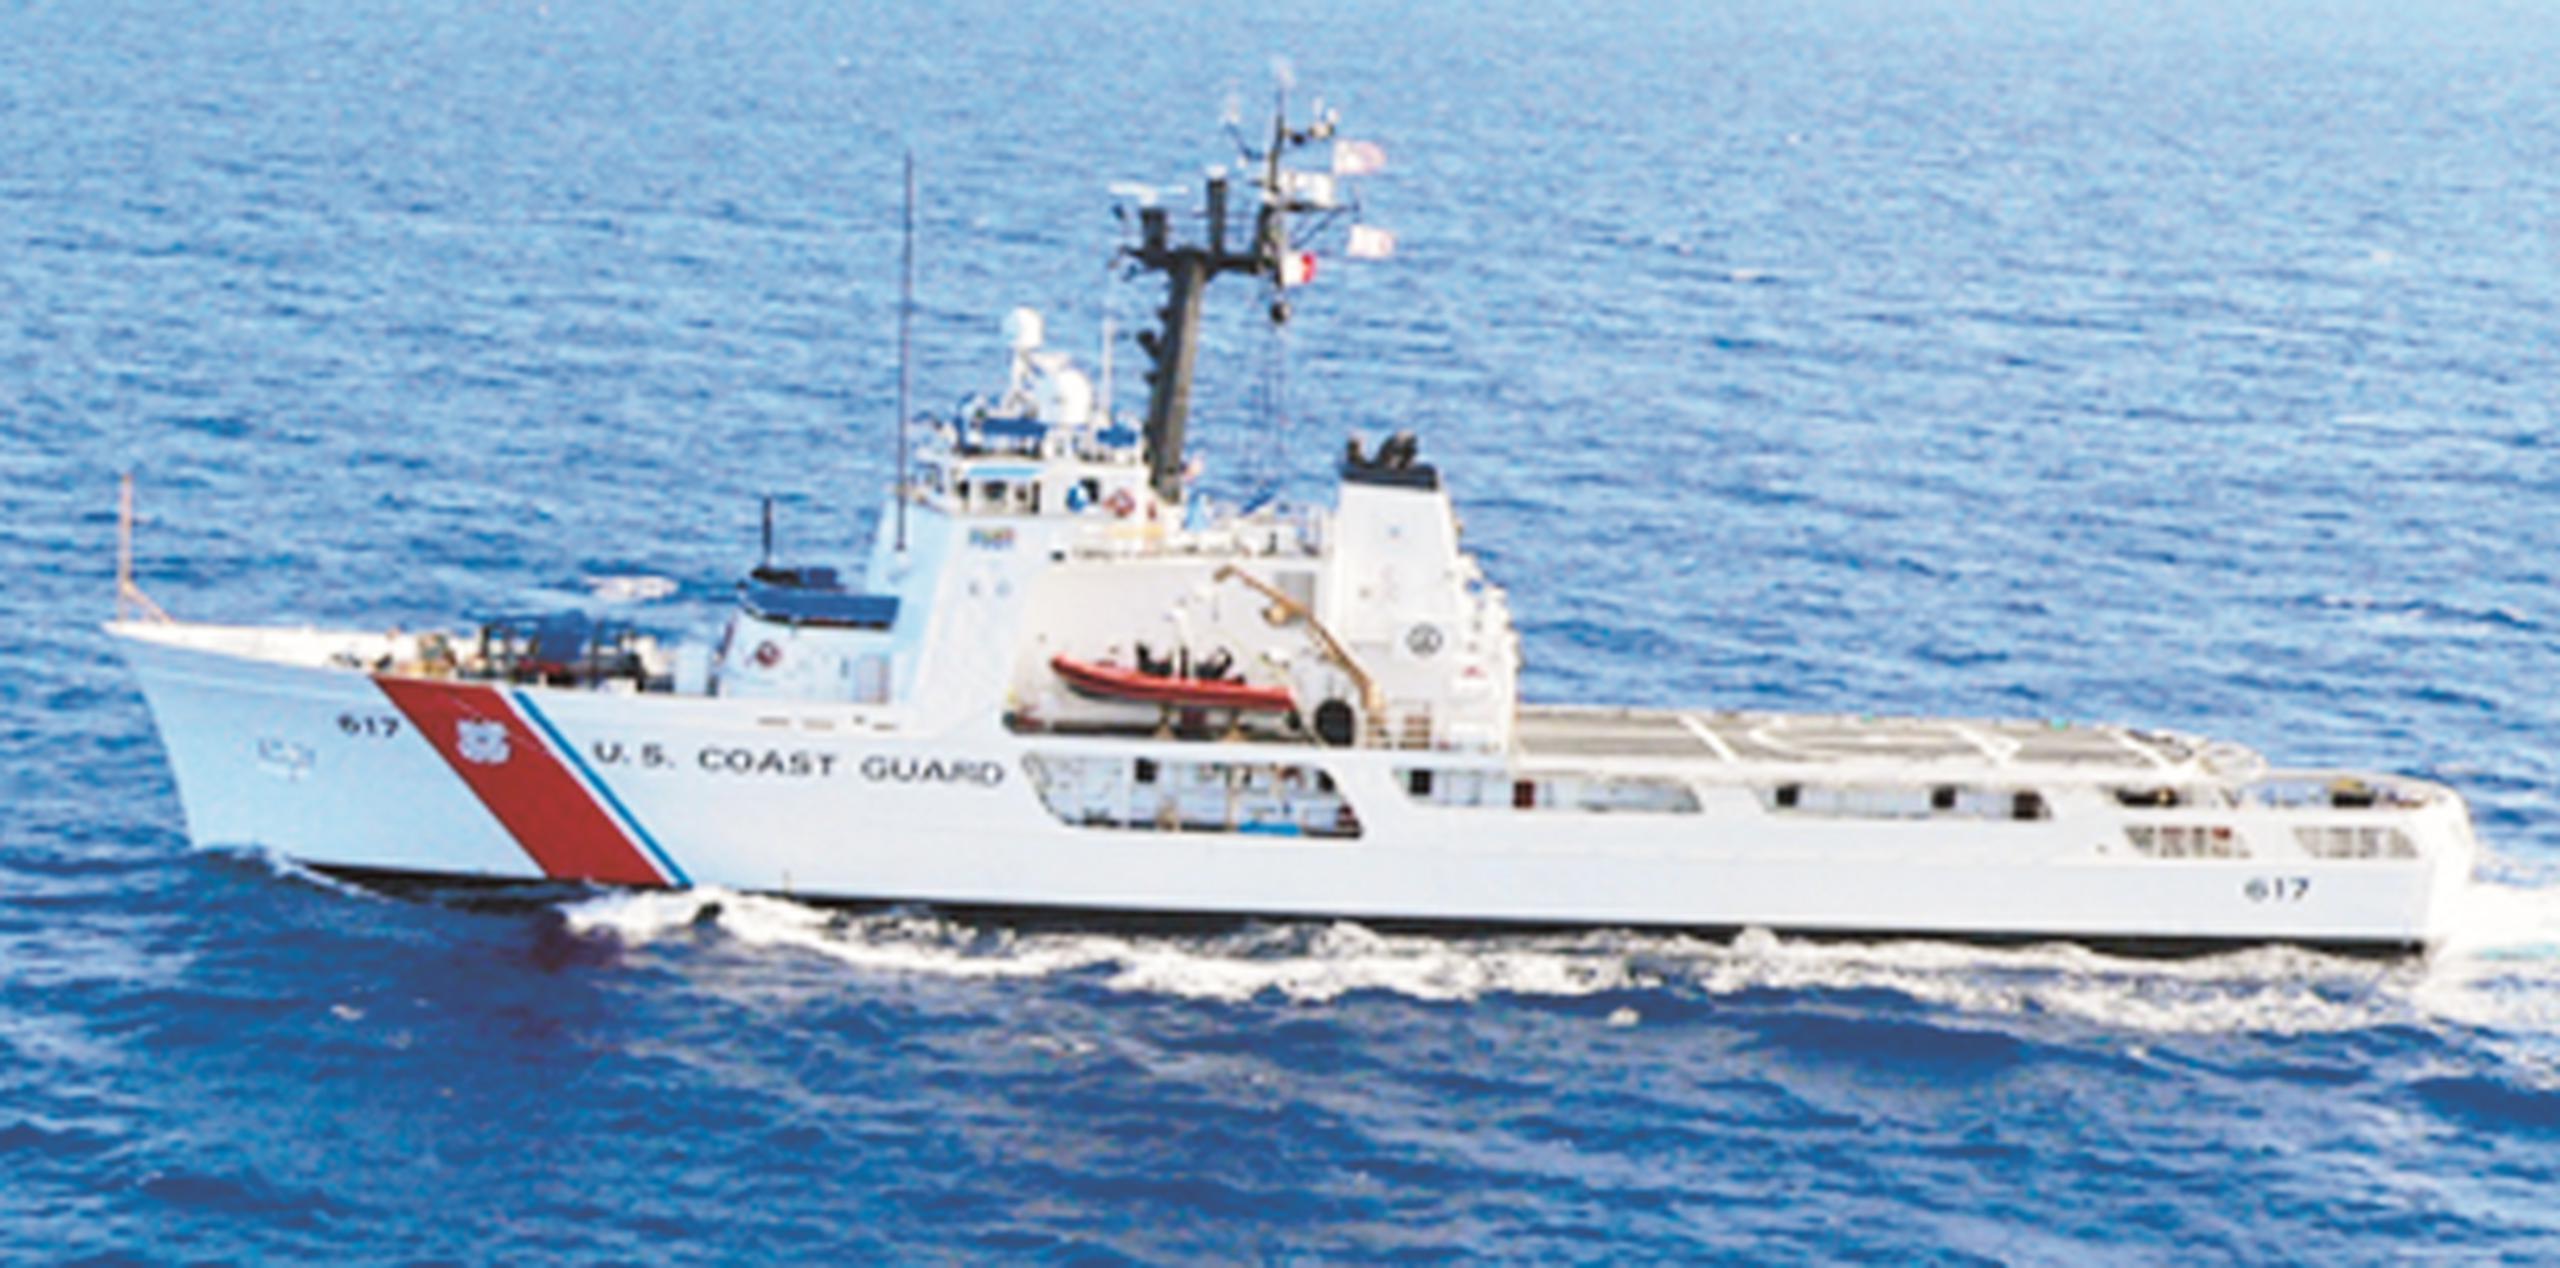 Los 21 migrantes cubanos están siendo procesados a bordo de un navío de la Guardia Costera. (Archivo)